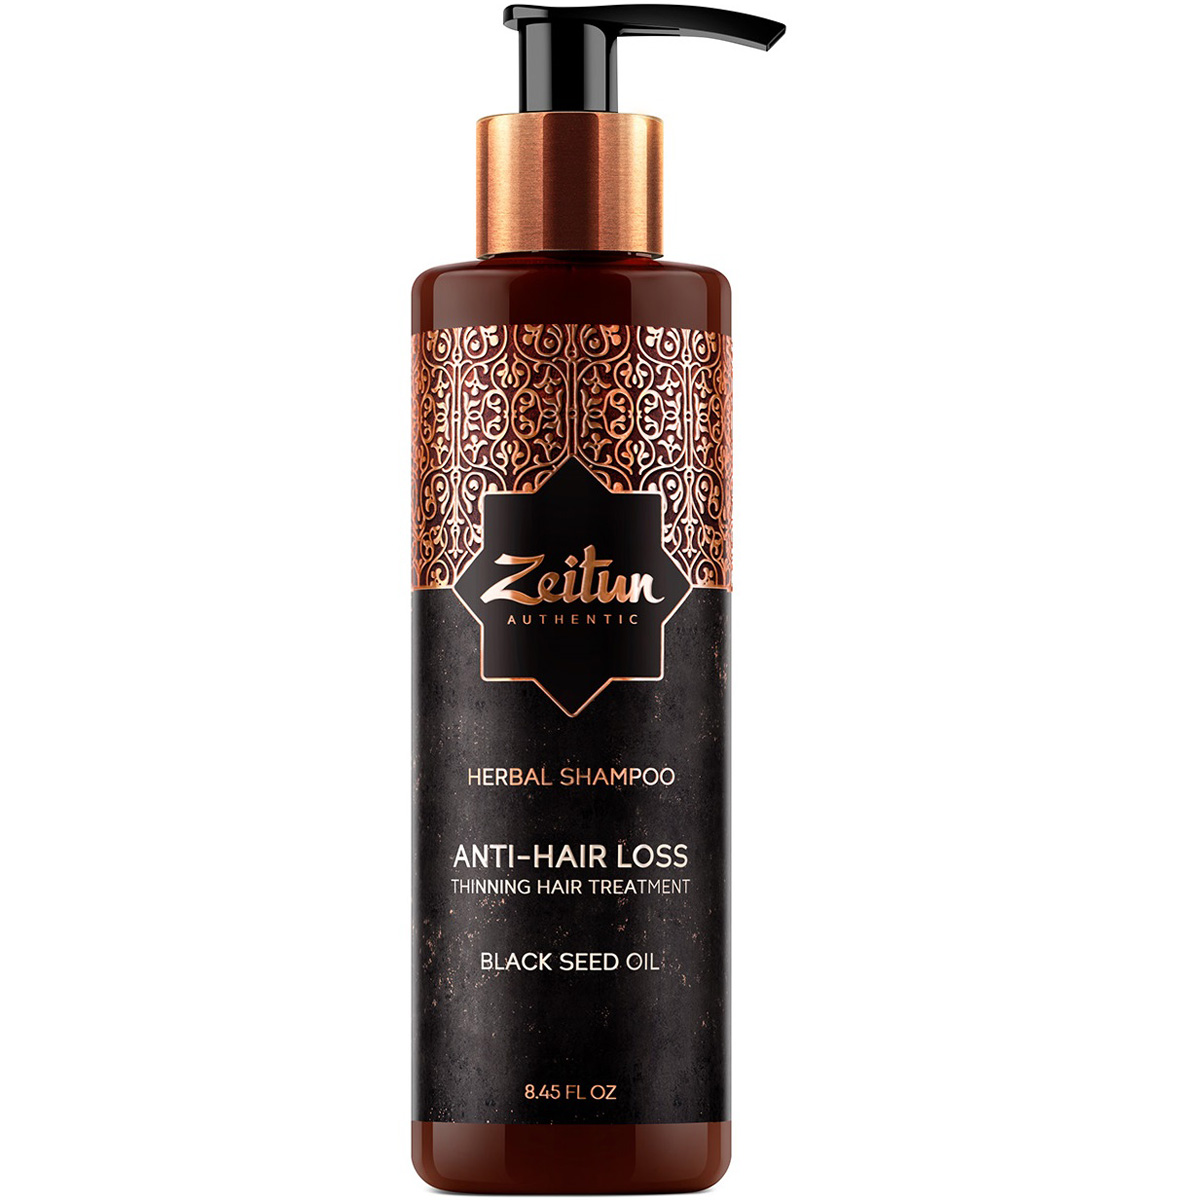 Zeitun Укрепляющий фито-шампунь с маслом черного тмина против выпадения волос Anti-Hair Loss, 250 мл (Zeitun, Authentic)